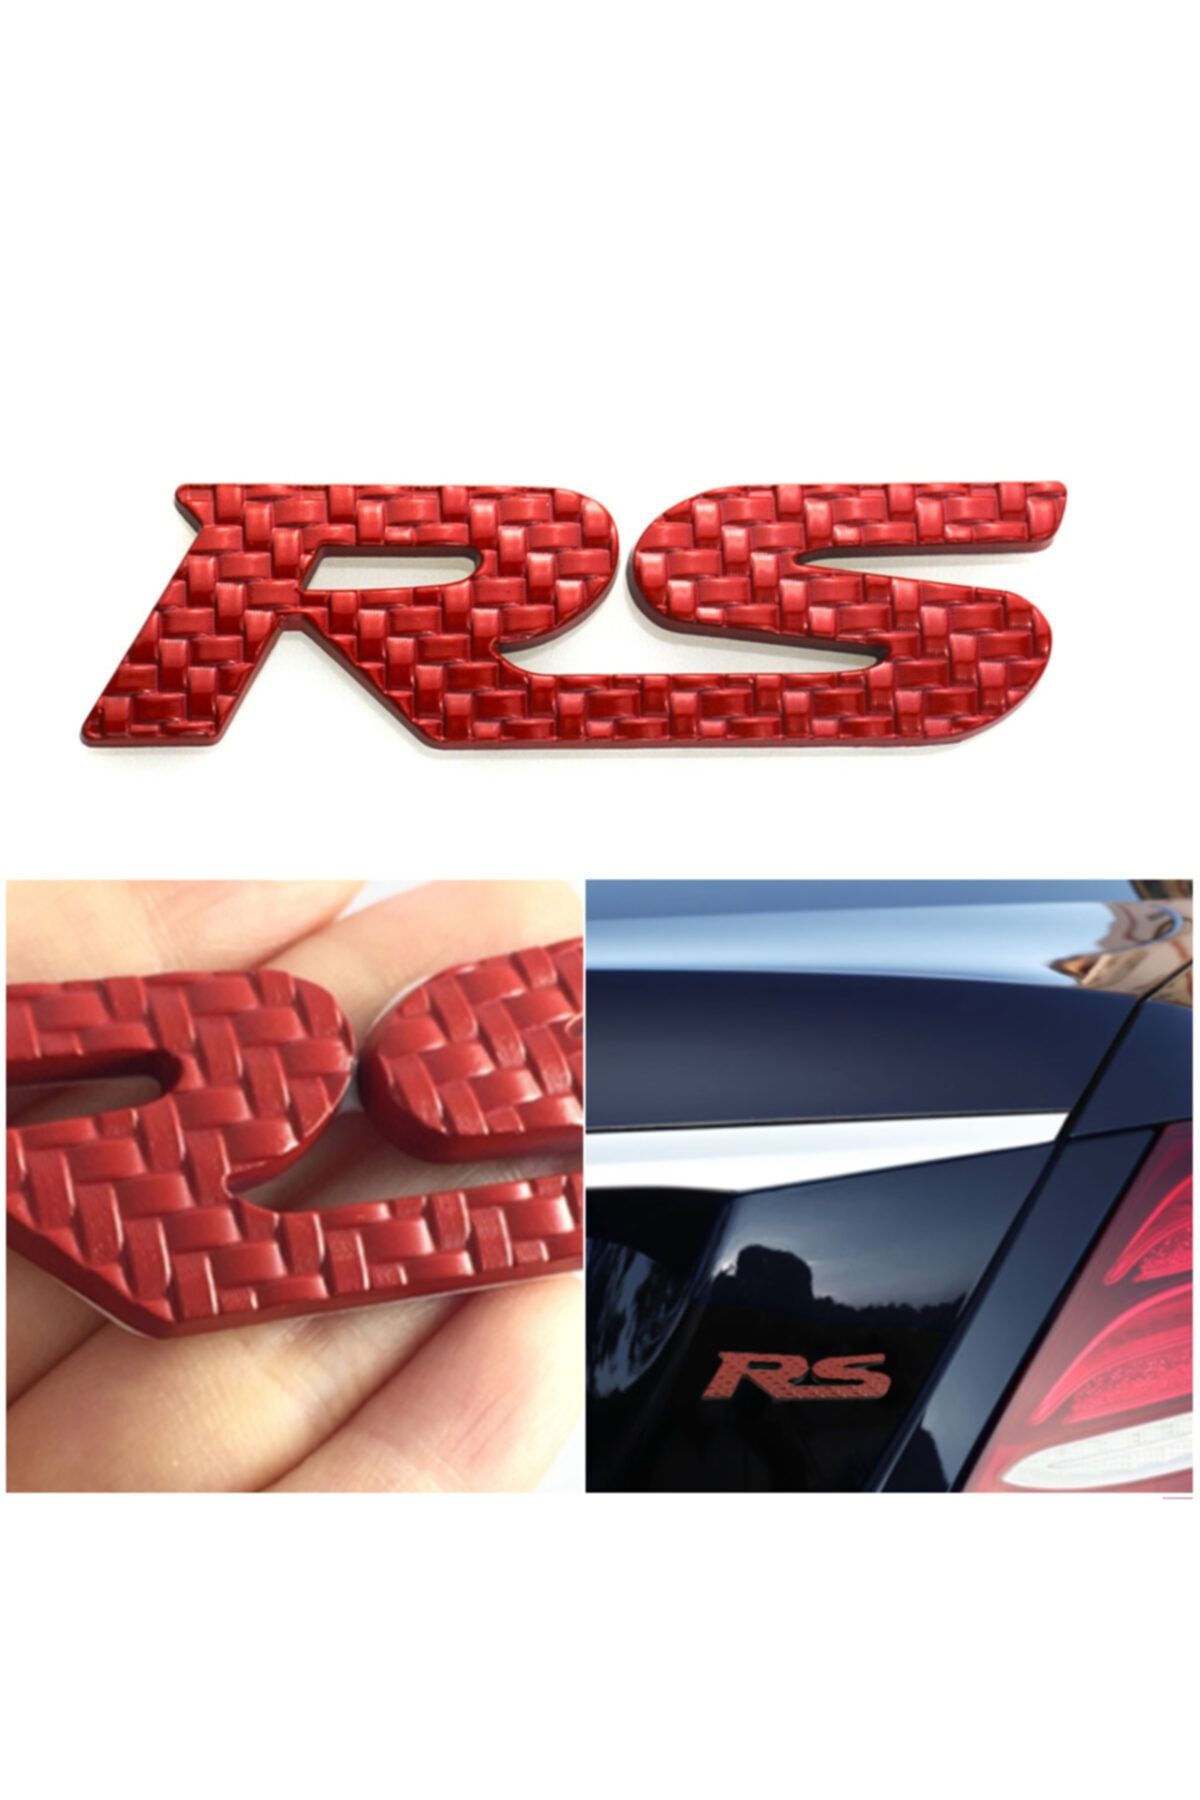 C9 Rs Kırmızı Karbon Krom Kaplama Renkli Paslanmaz Metal Arma Amblem Vernikli Sticker Yapışkanlı